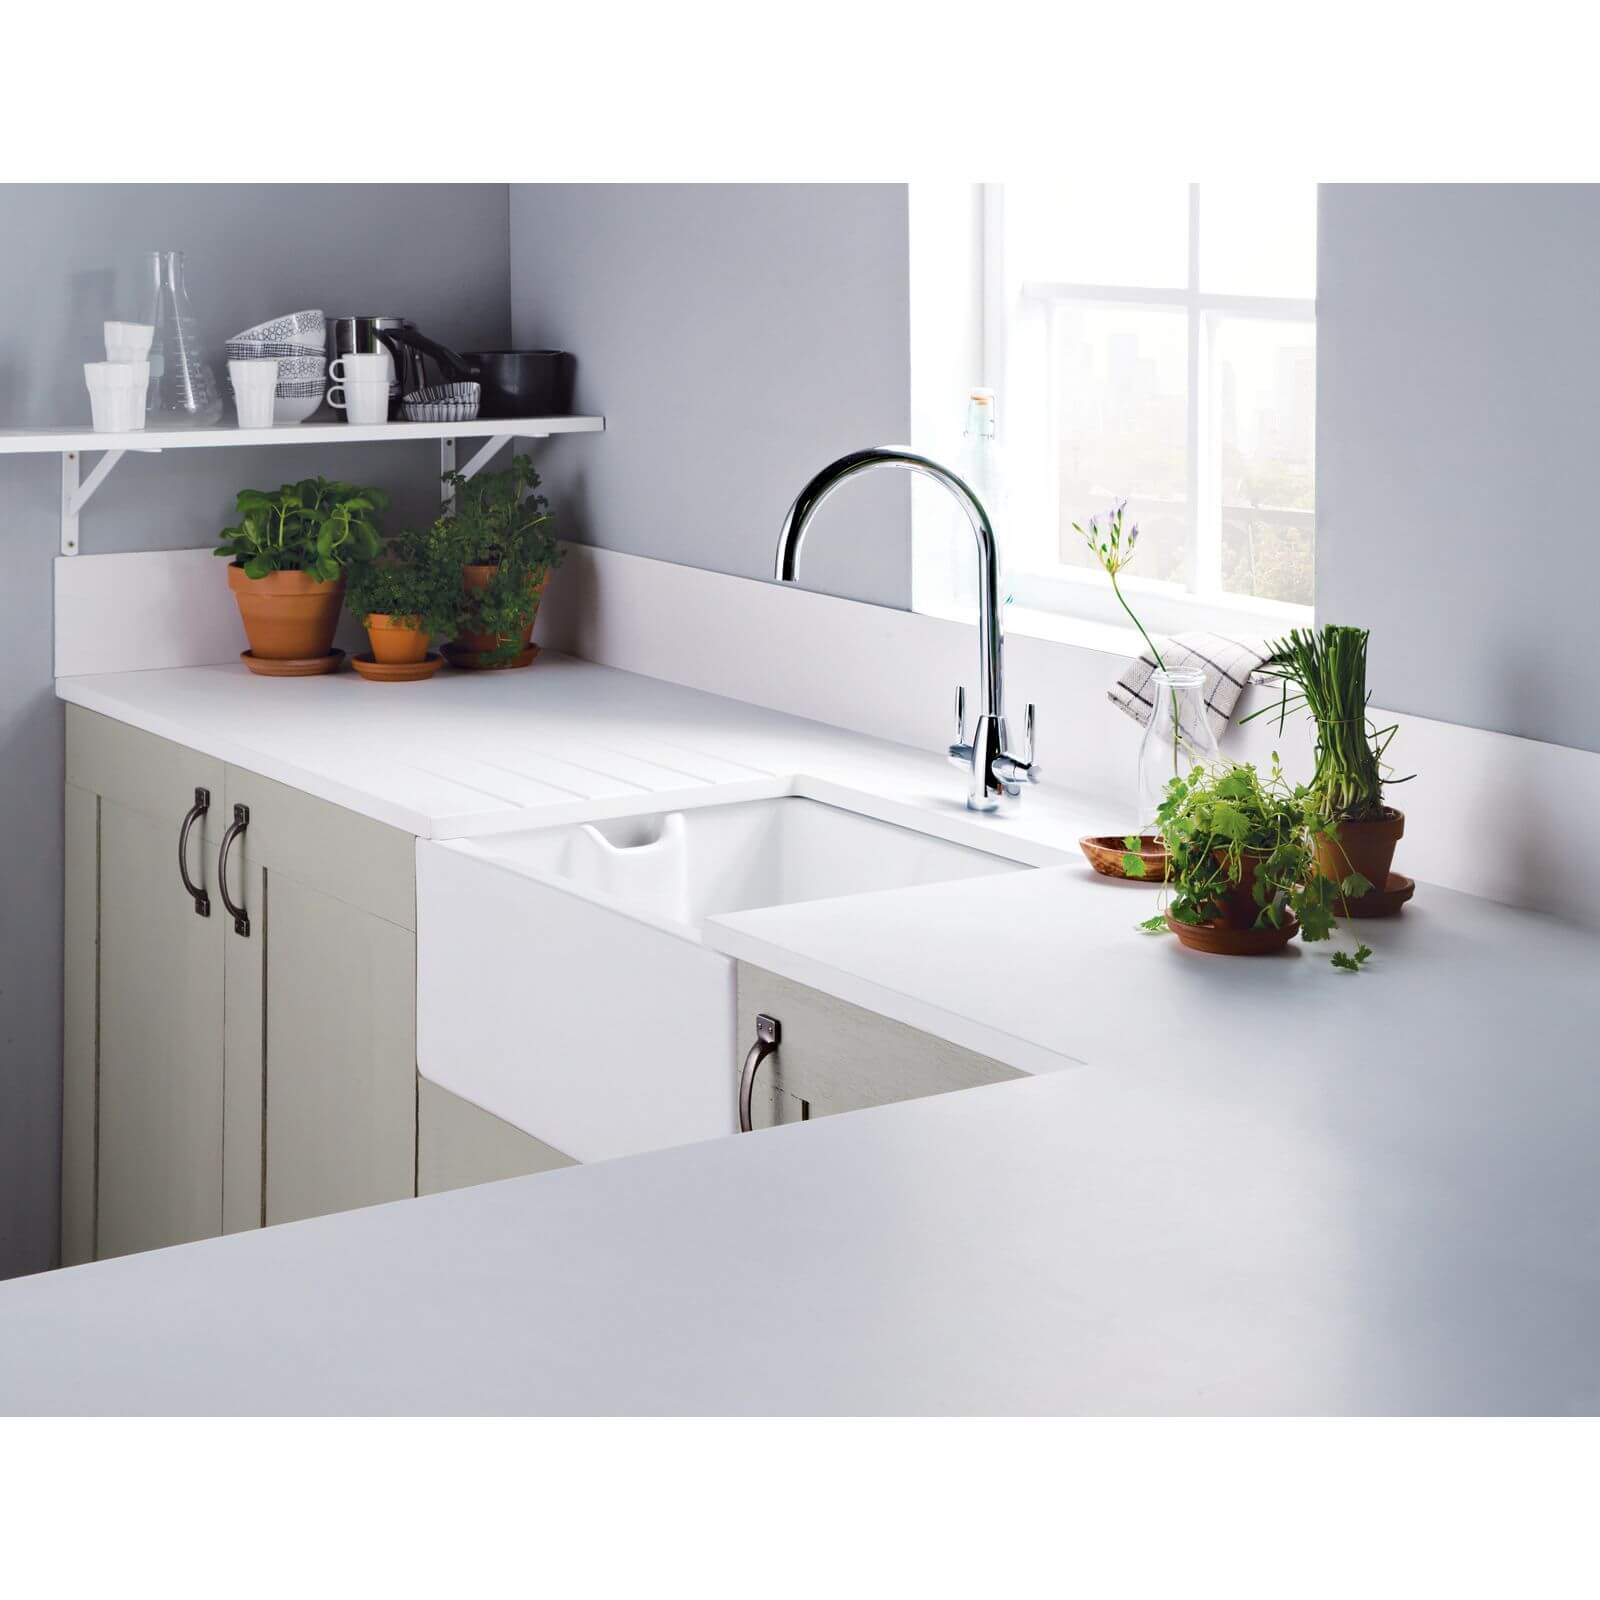 Minerva White Kitchen Worktop - 150 x 60 x 2.5cm